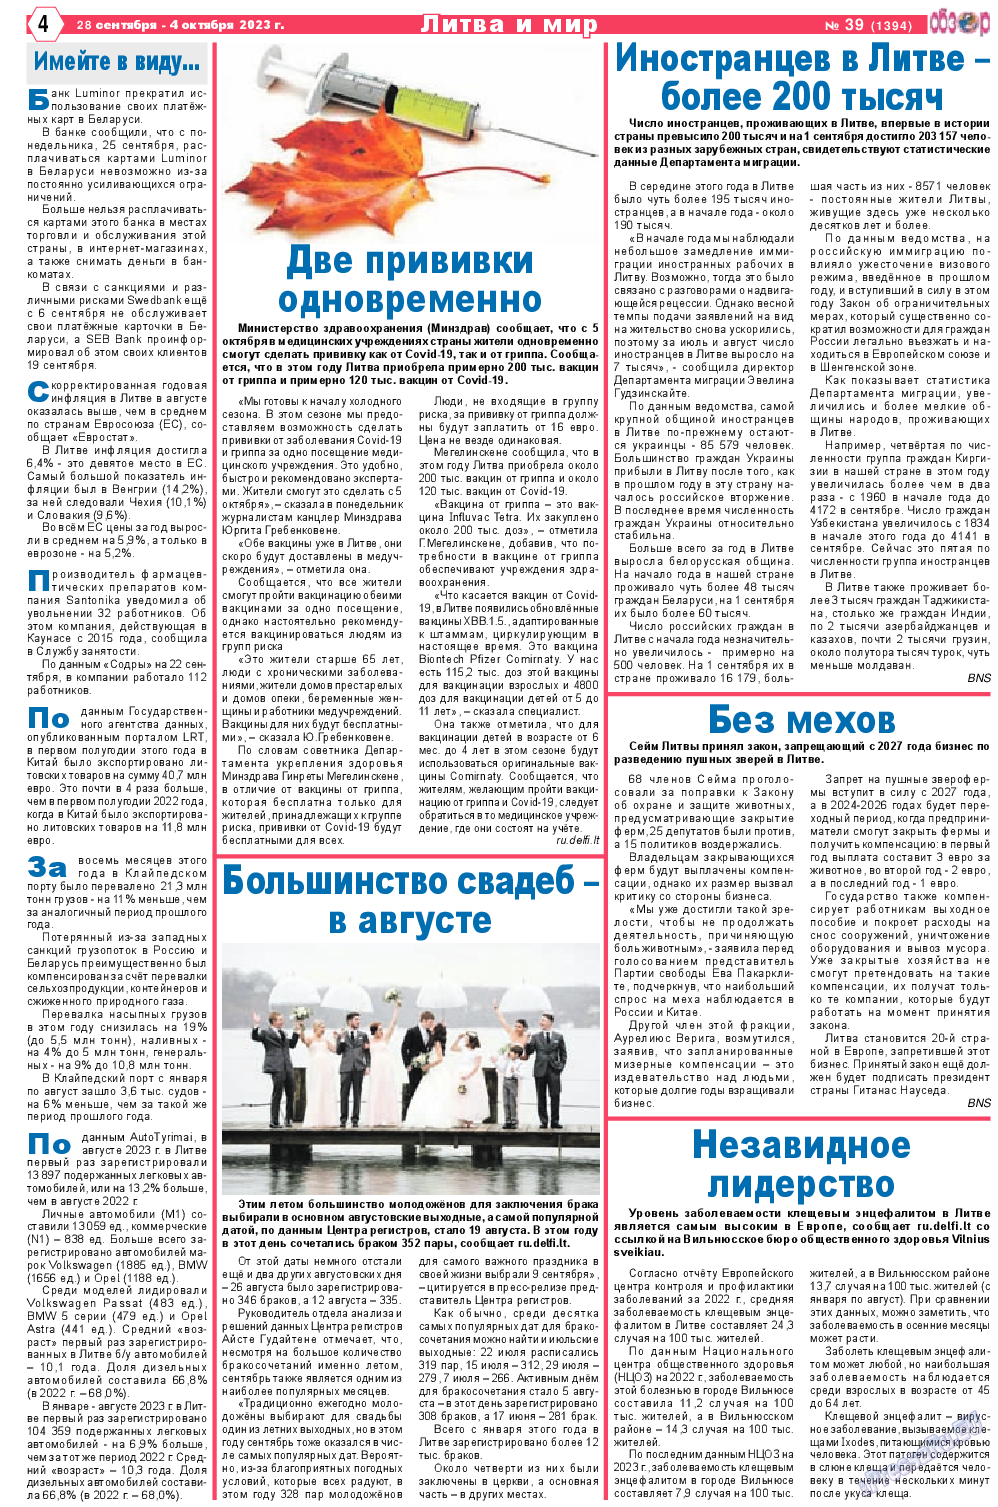 Обзор, газета. 2023 №39 стр.4